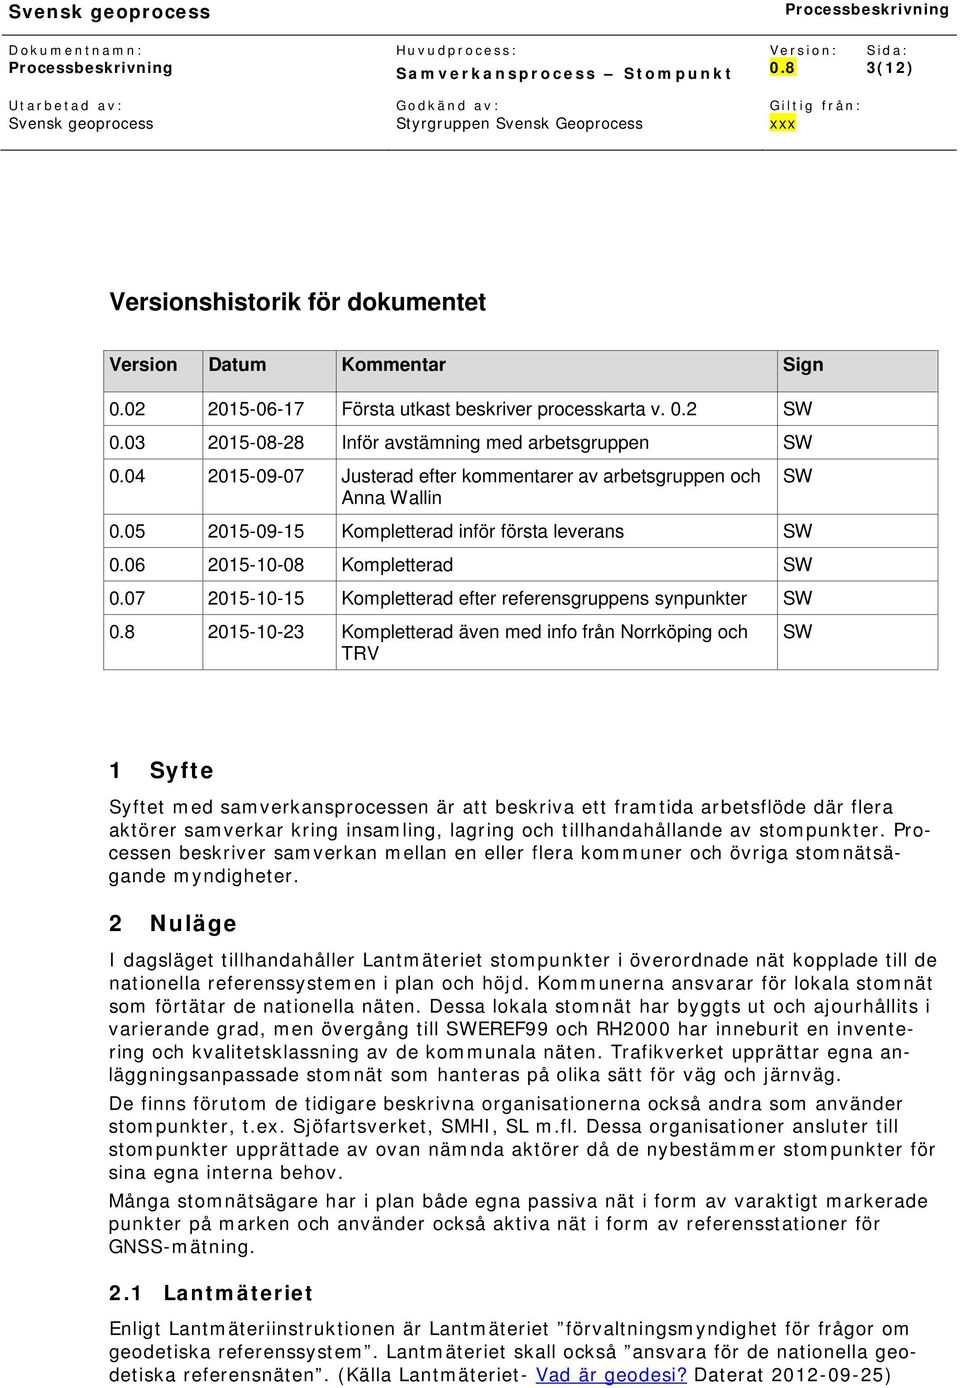 07 2015-10-15 Kompletterad efter referensgruppens synpunkter SW 2015-10-23 Kompletterad även med info från Norrköping och TRV SW 1 Syfte Syftet med samverkansprocessen är att beskriva ett framtida